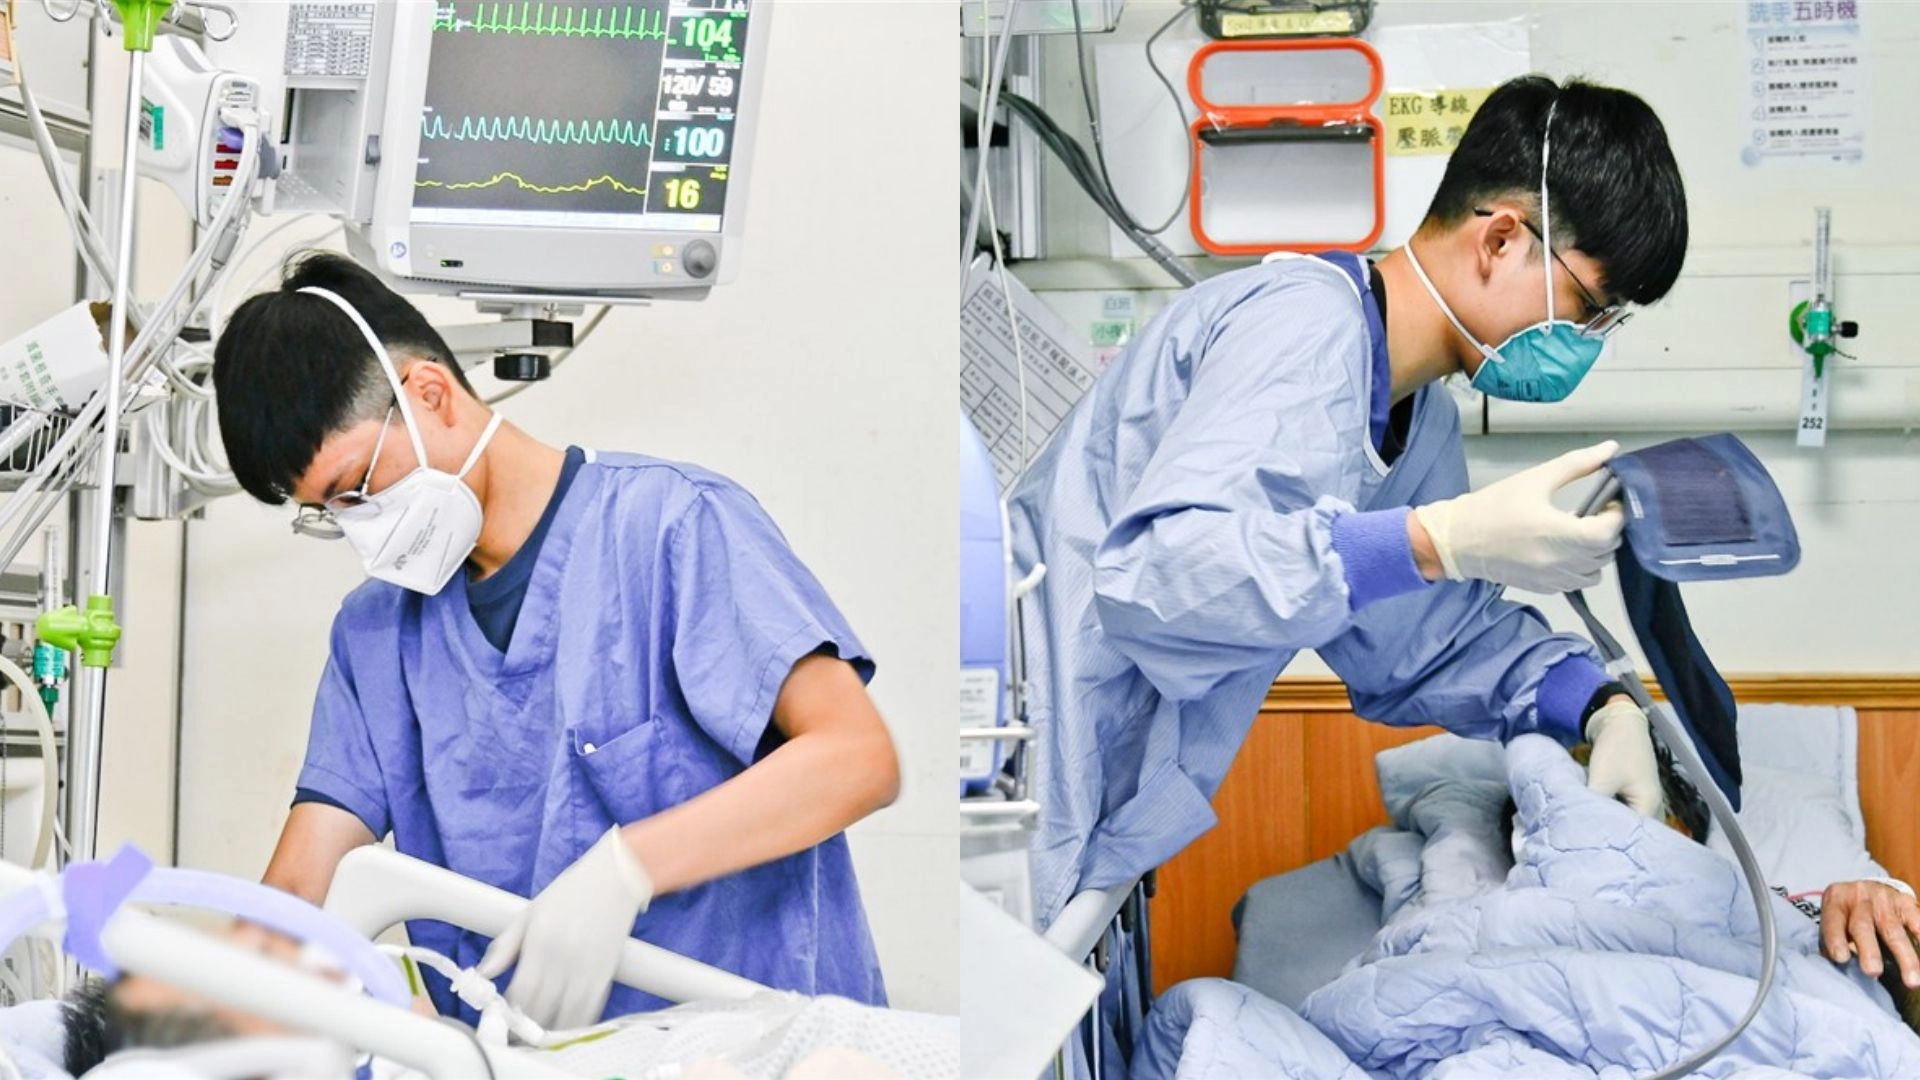 林承濬與林承睿兩兄弟分別在外科加護病房及急診室服務，具備急救及急重症照護專業。